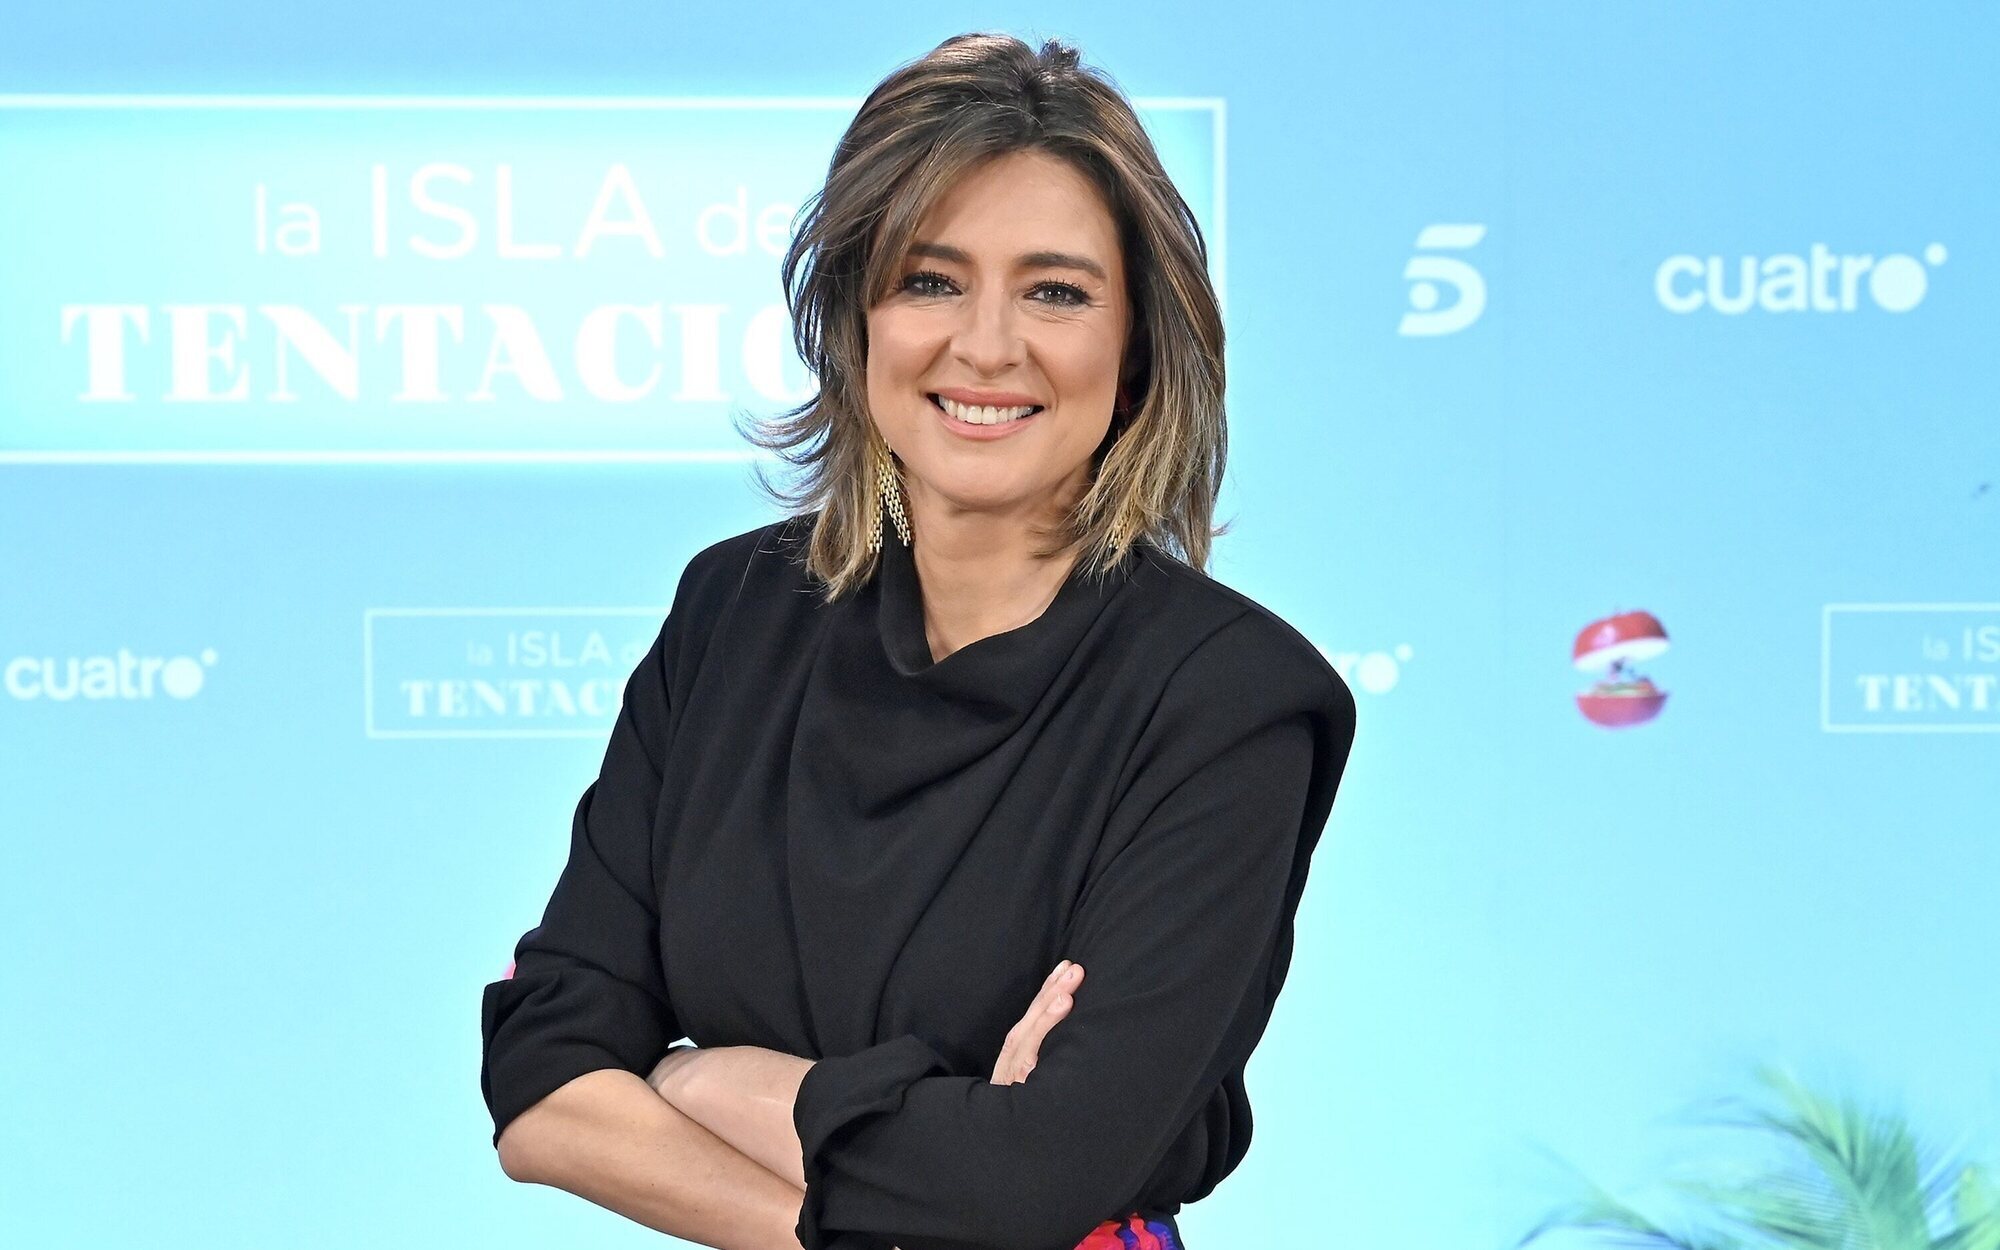 'La isla de las tentaciones 5' precipita su estreno en Mediaset con dos entregas especiales